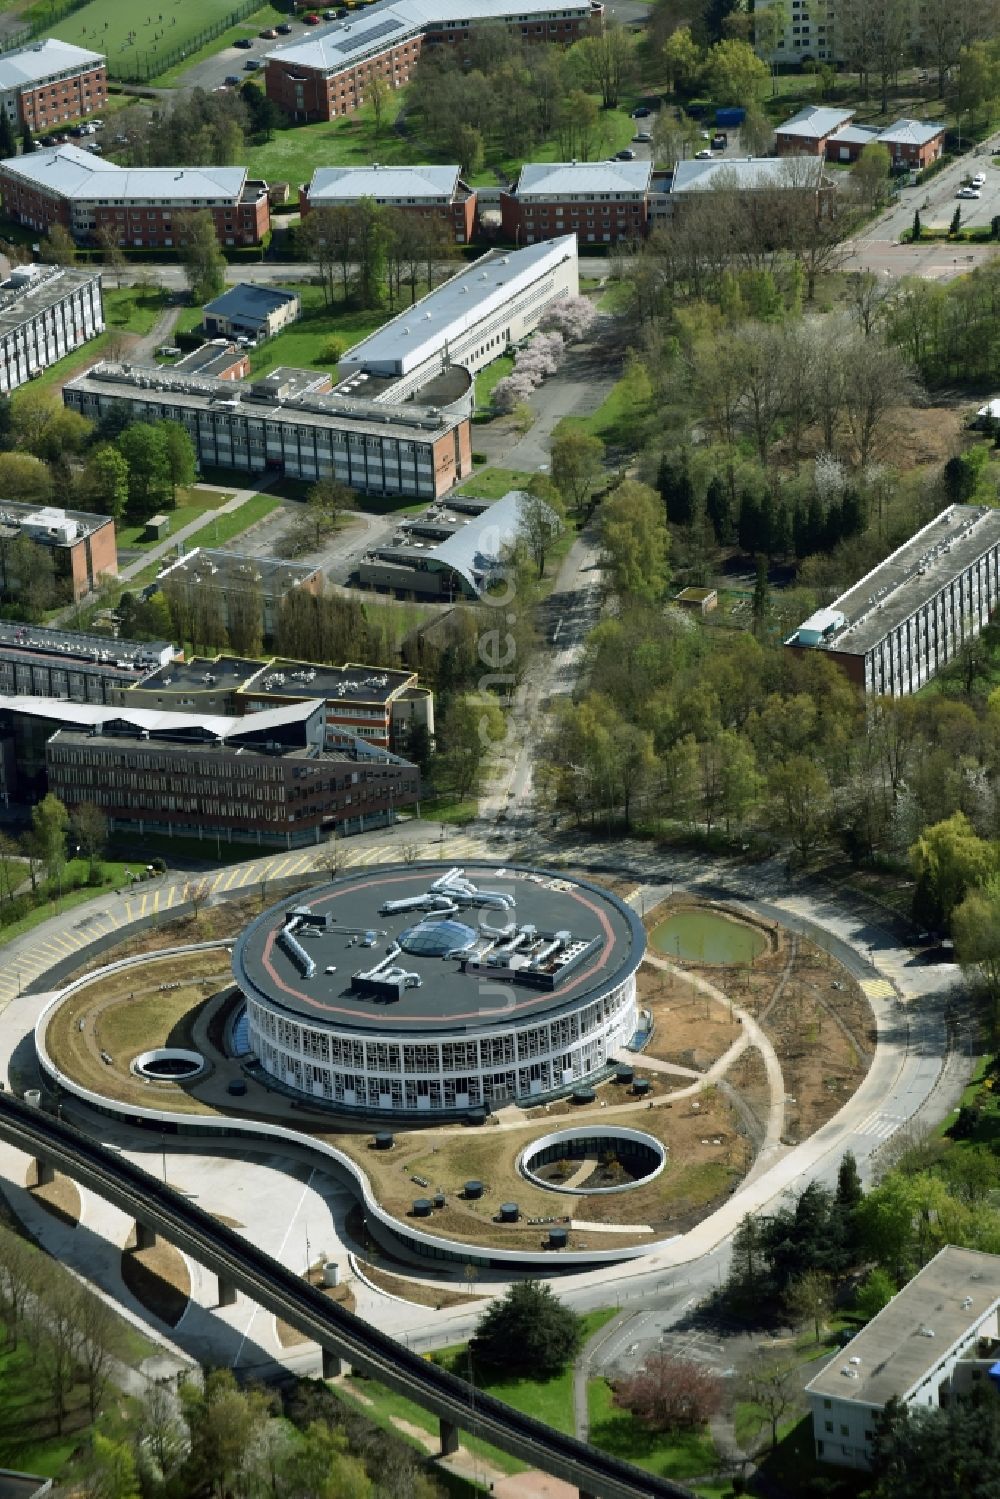 Luftaufnahme Lille - Bibliotheks- Gebäude auf dem Campus der Universitäte Universite de Lille in Nord-Pas-de-Calais Picardie, Frankreich